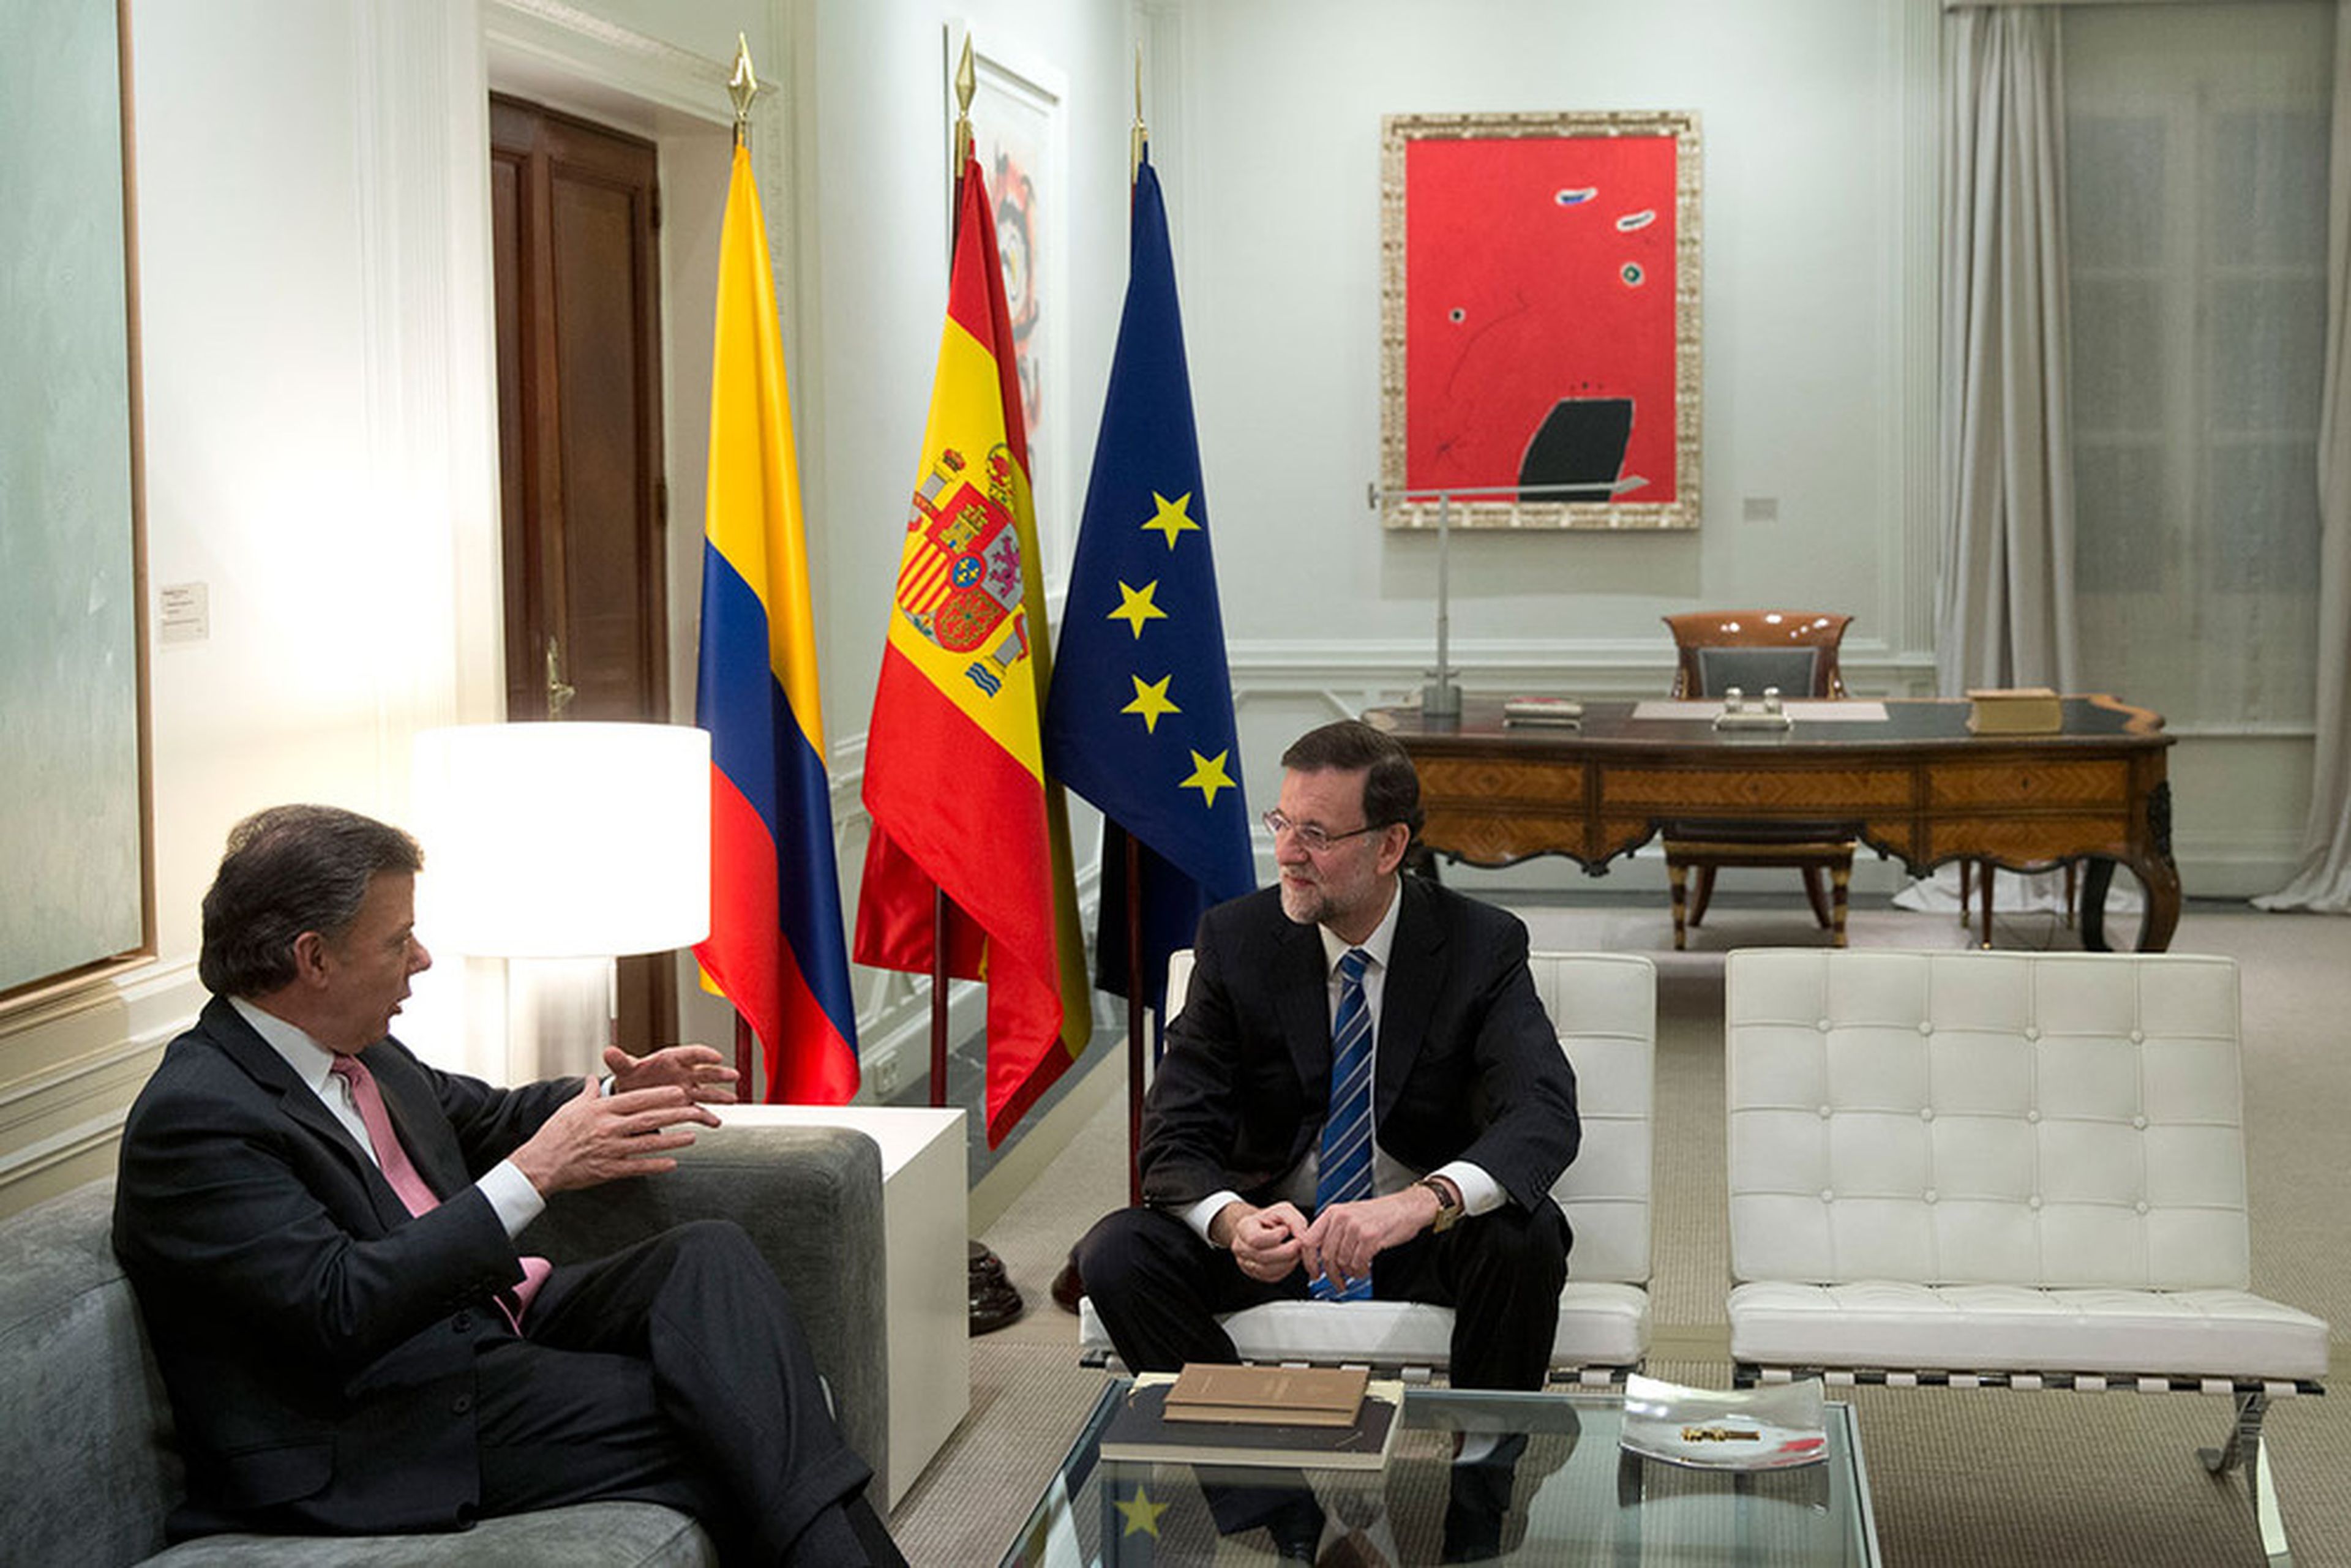 Mariano Rajoy durante su mandato como Presidente del Gobierno en el despacho de La Moncloa junto a Juan Manuel Santos, presidente de Colombia, el 22 de enero de 2014.